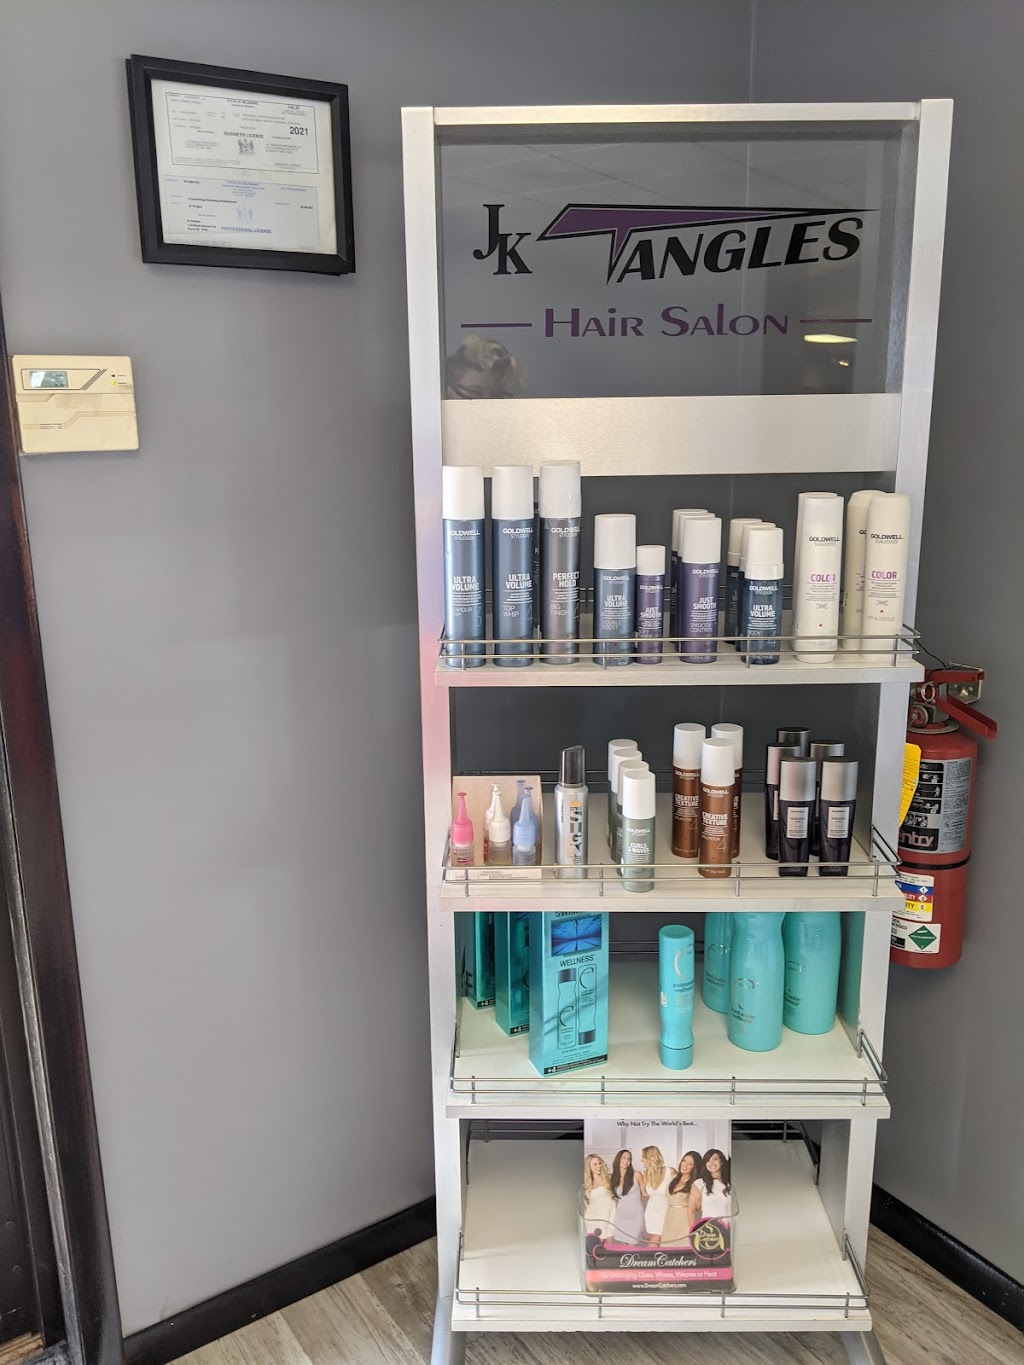 JK Tangles Hair Salon | 1151 E Lebanon Rd #E, Dover, DE 19901 | Phone: (302) 698-1006